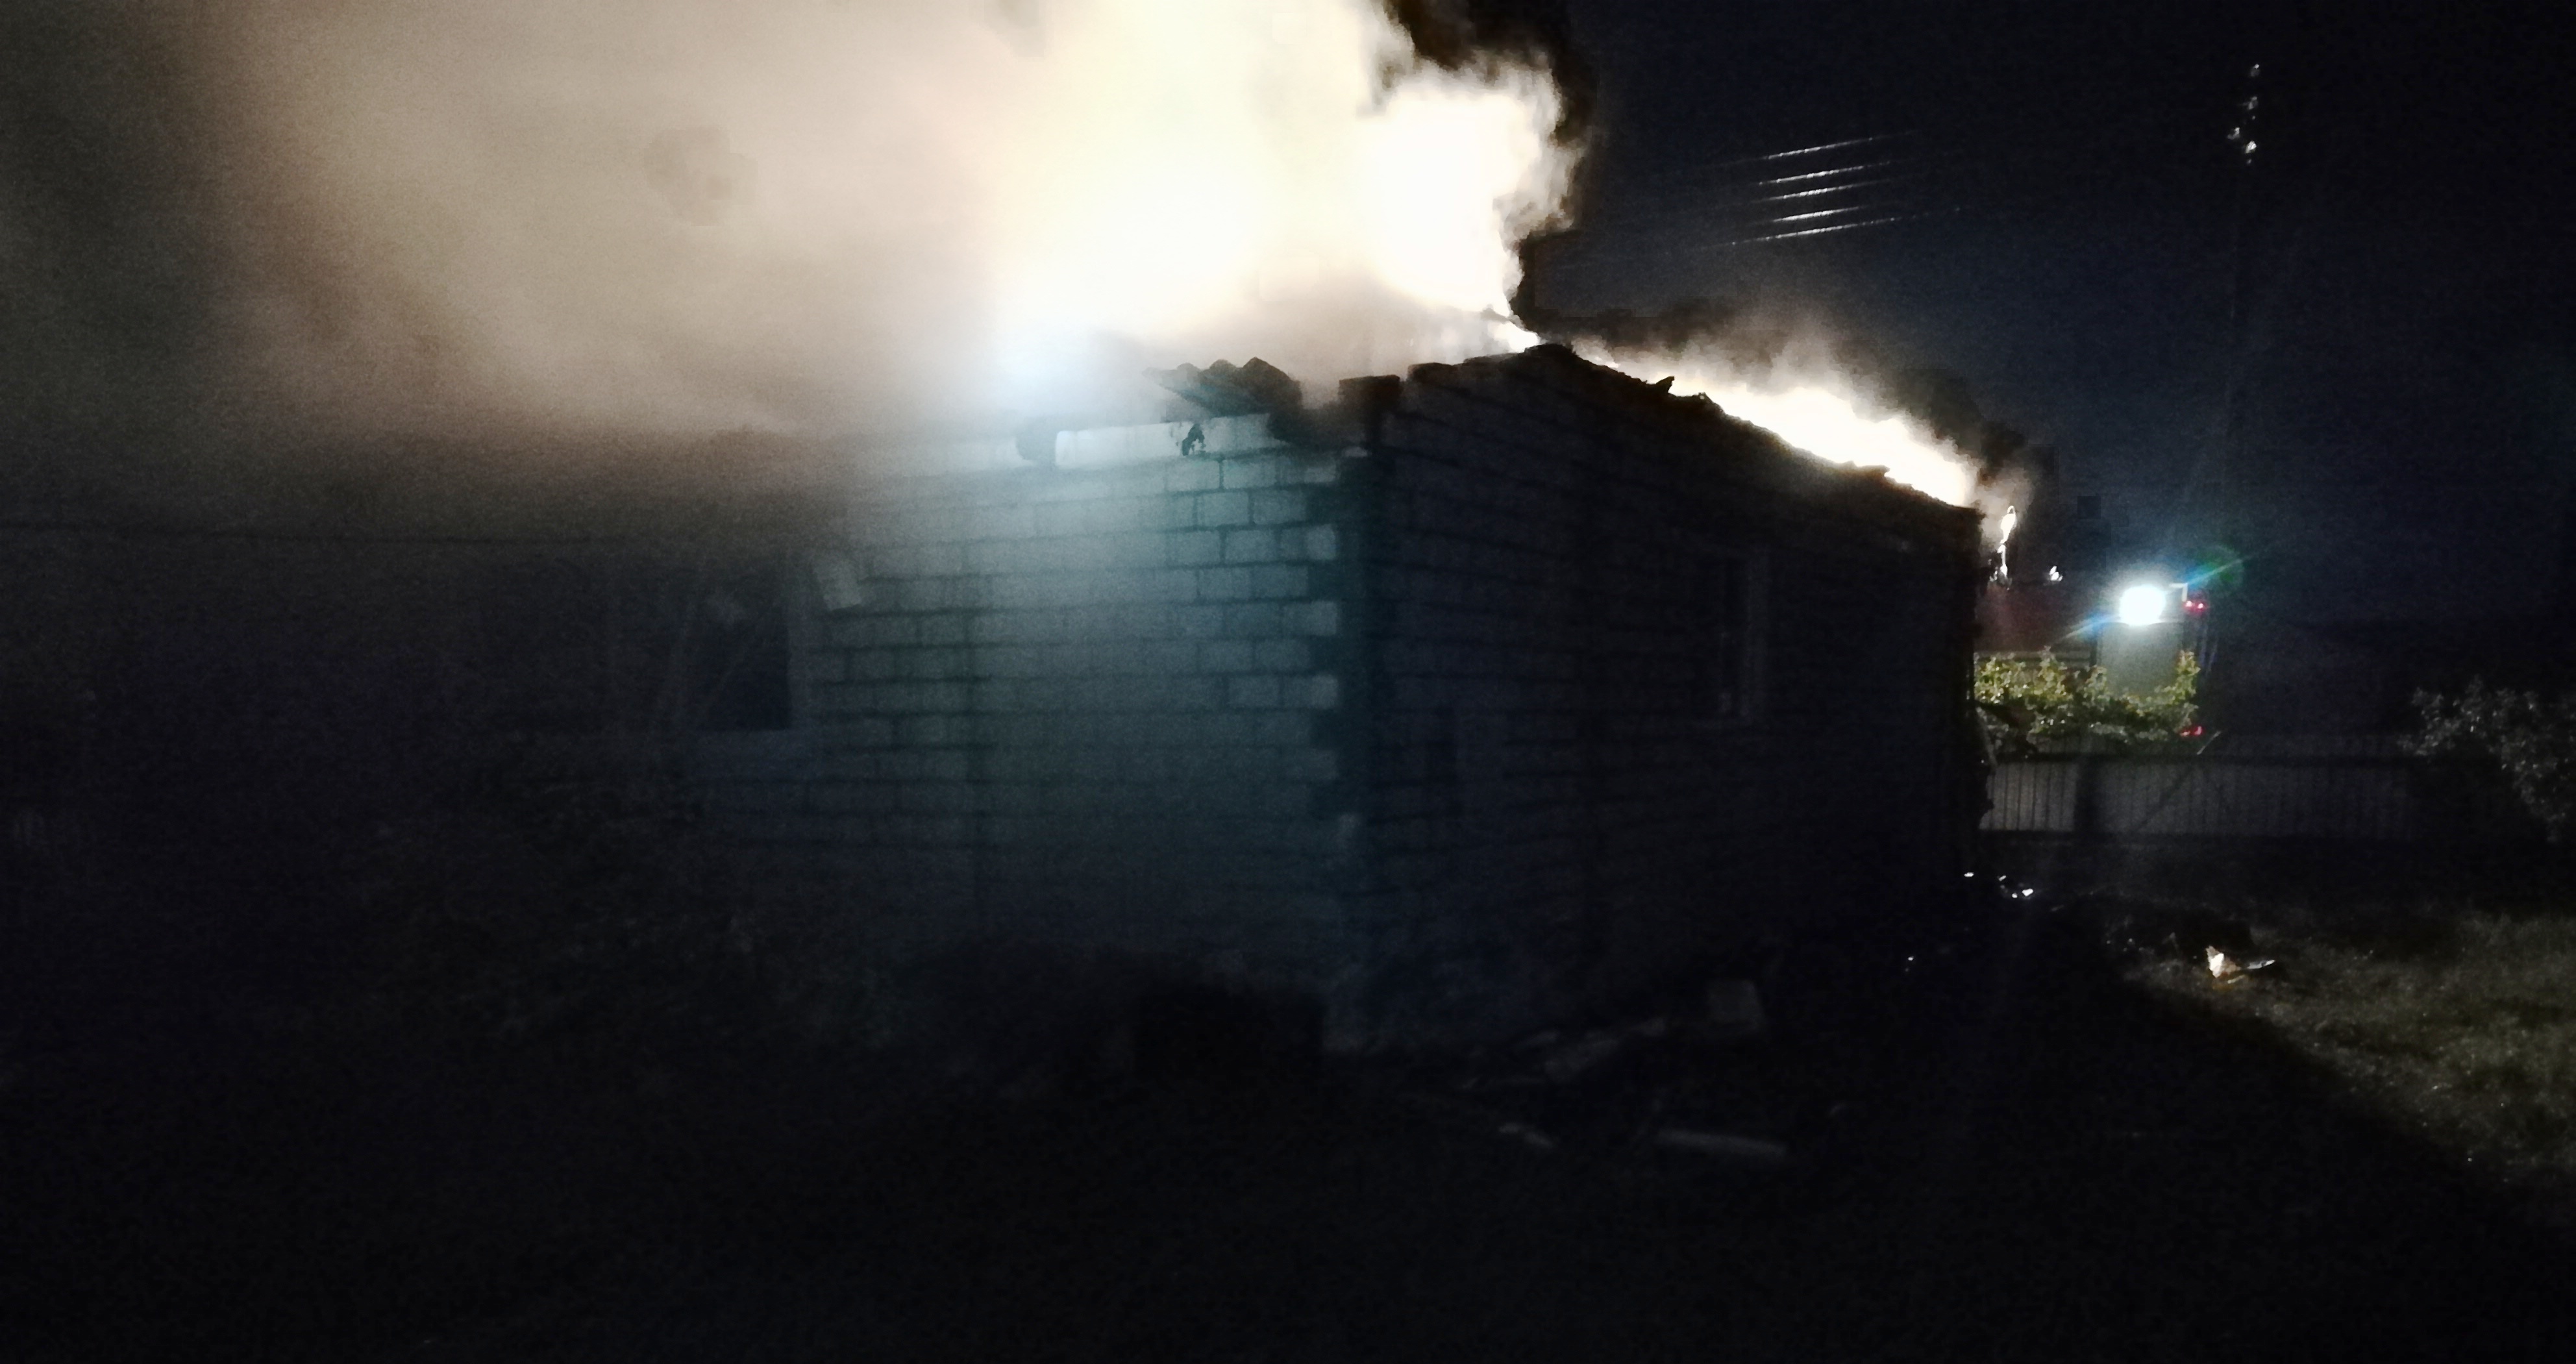  Гроза стала причиной четырех пожаров в Могилевской области